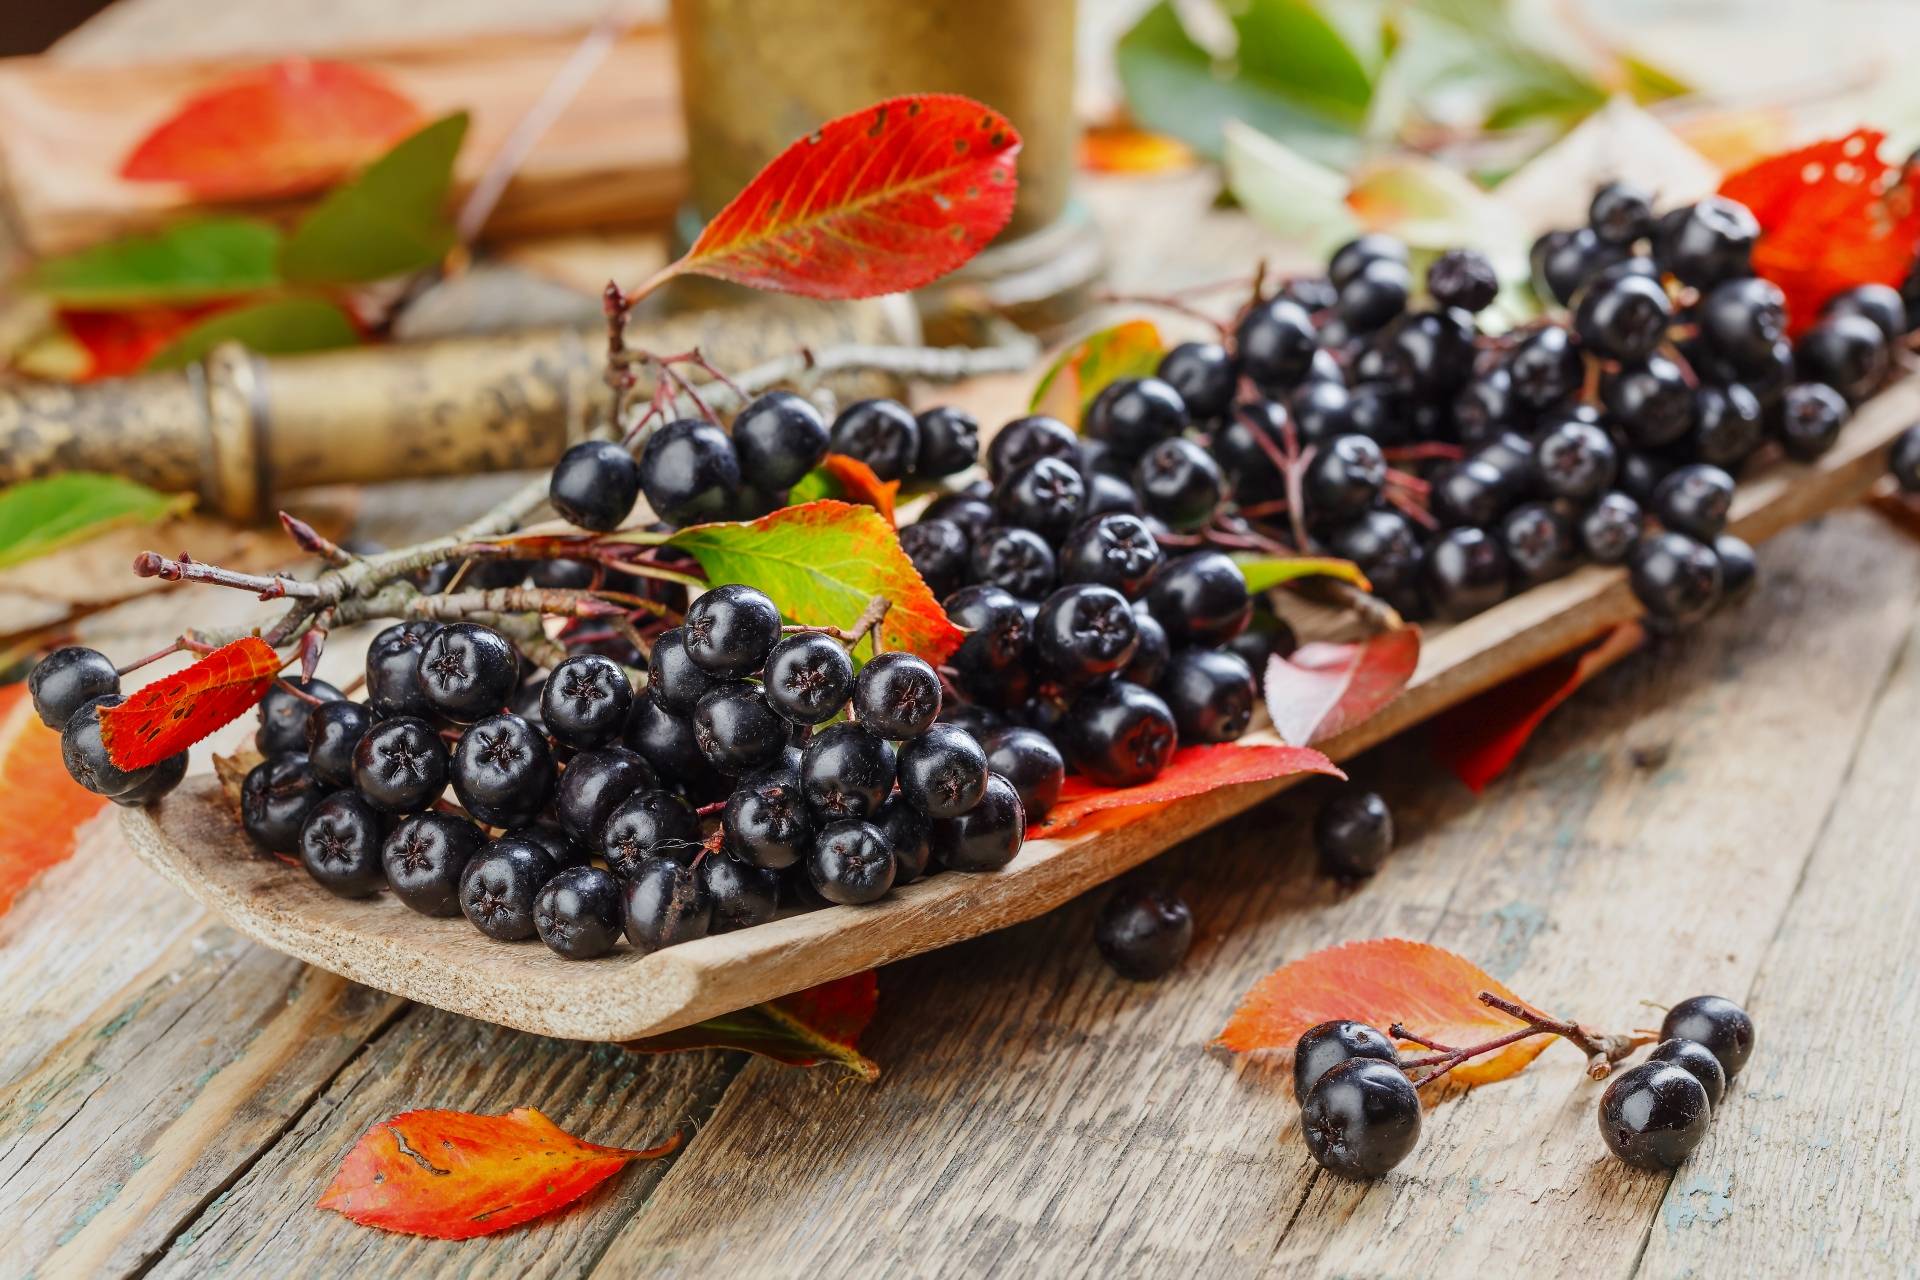 Aronia - właściwości lecznicze i składniki odżywcze. Jak zrobić przetwory z aronii? Owoce aronii i jesienne liście leżą na długiej drewnianej desce na starym rustykalnym stole.